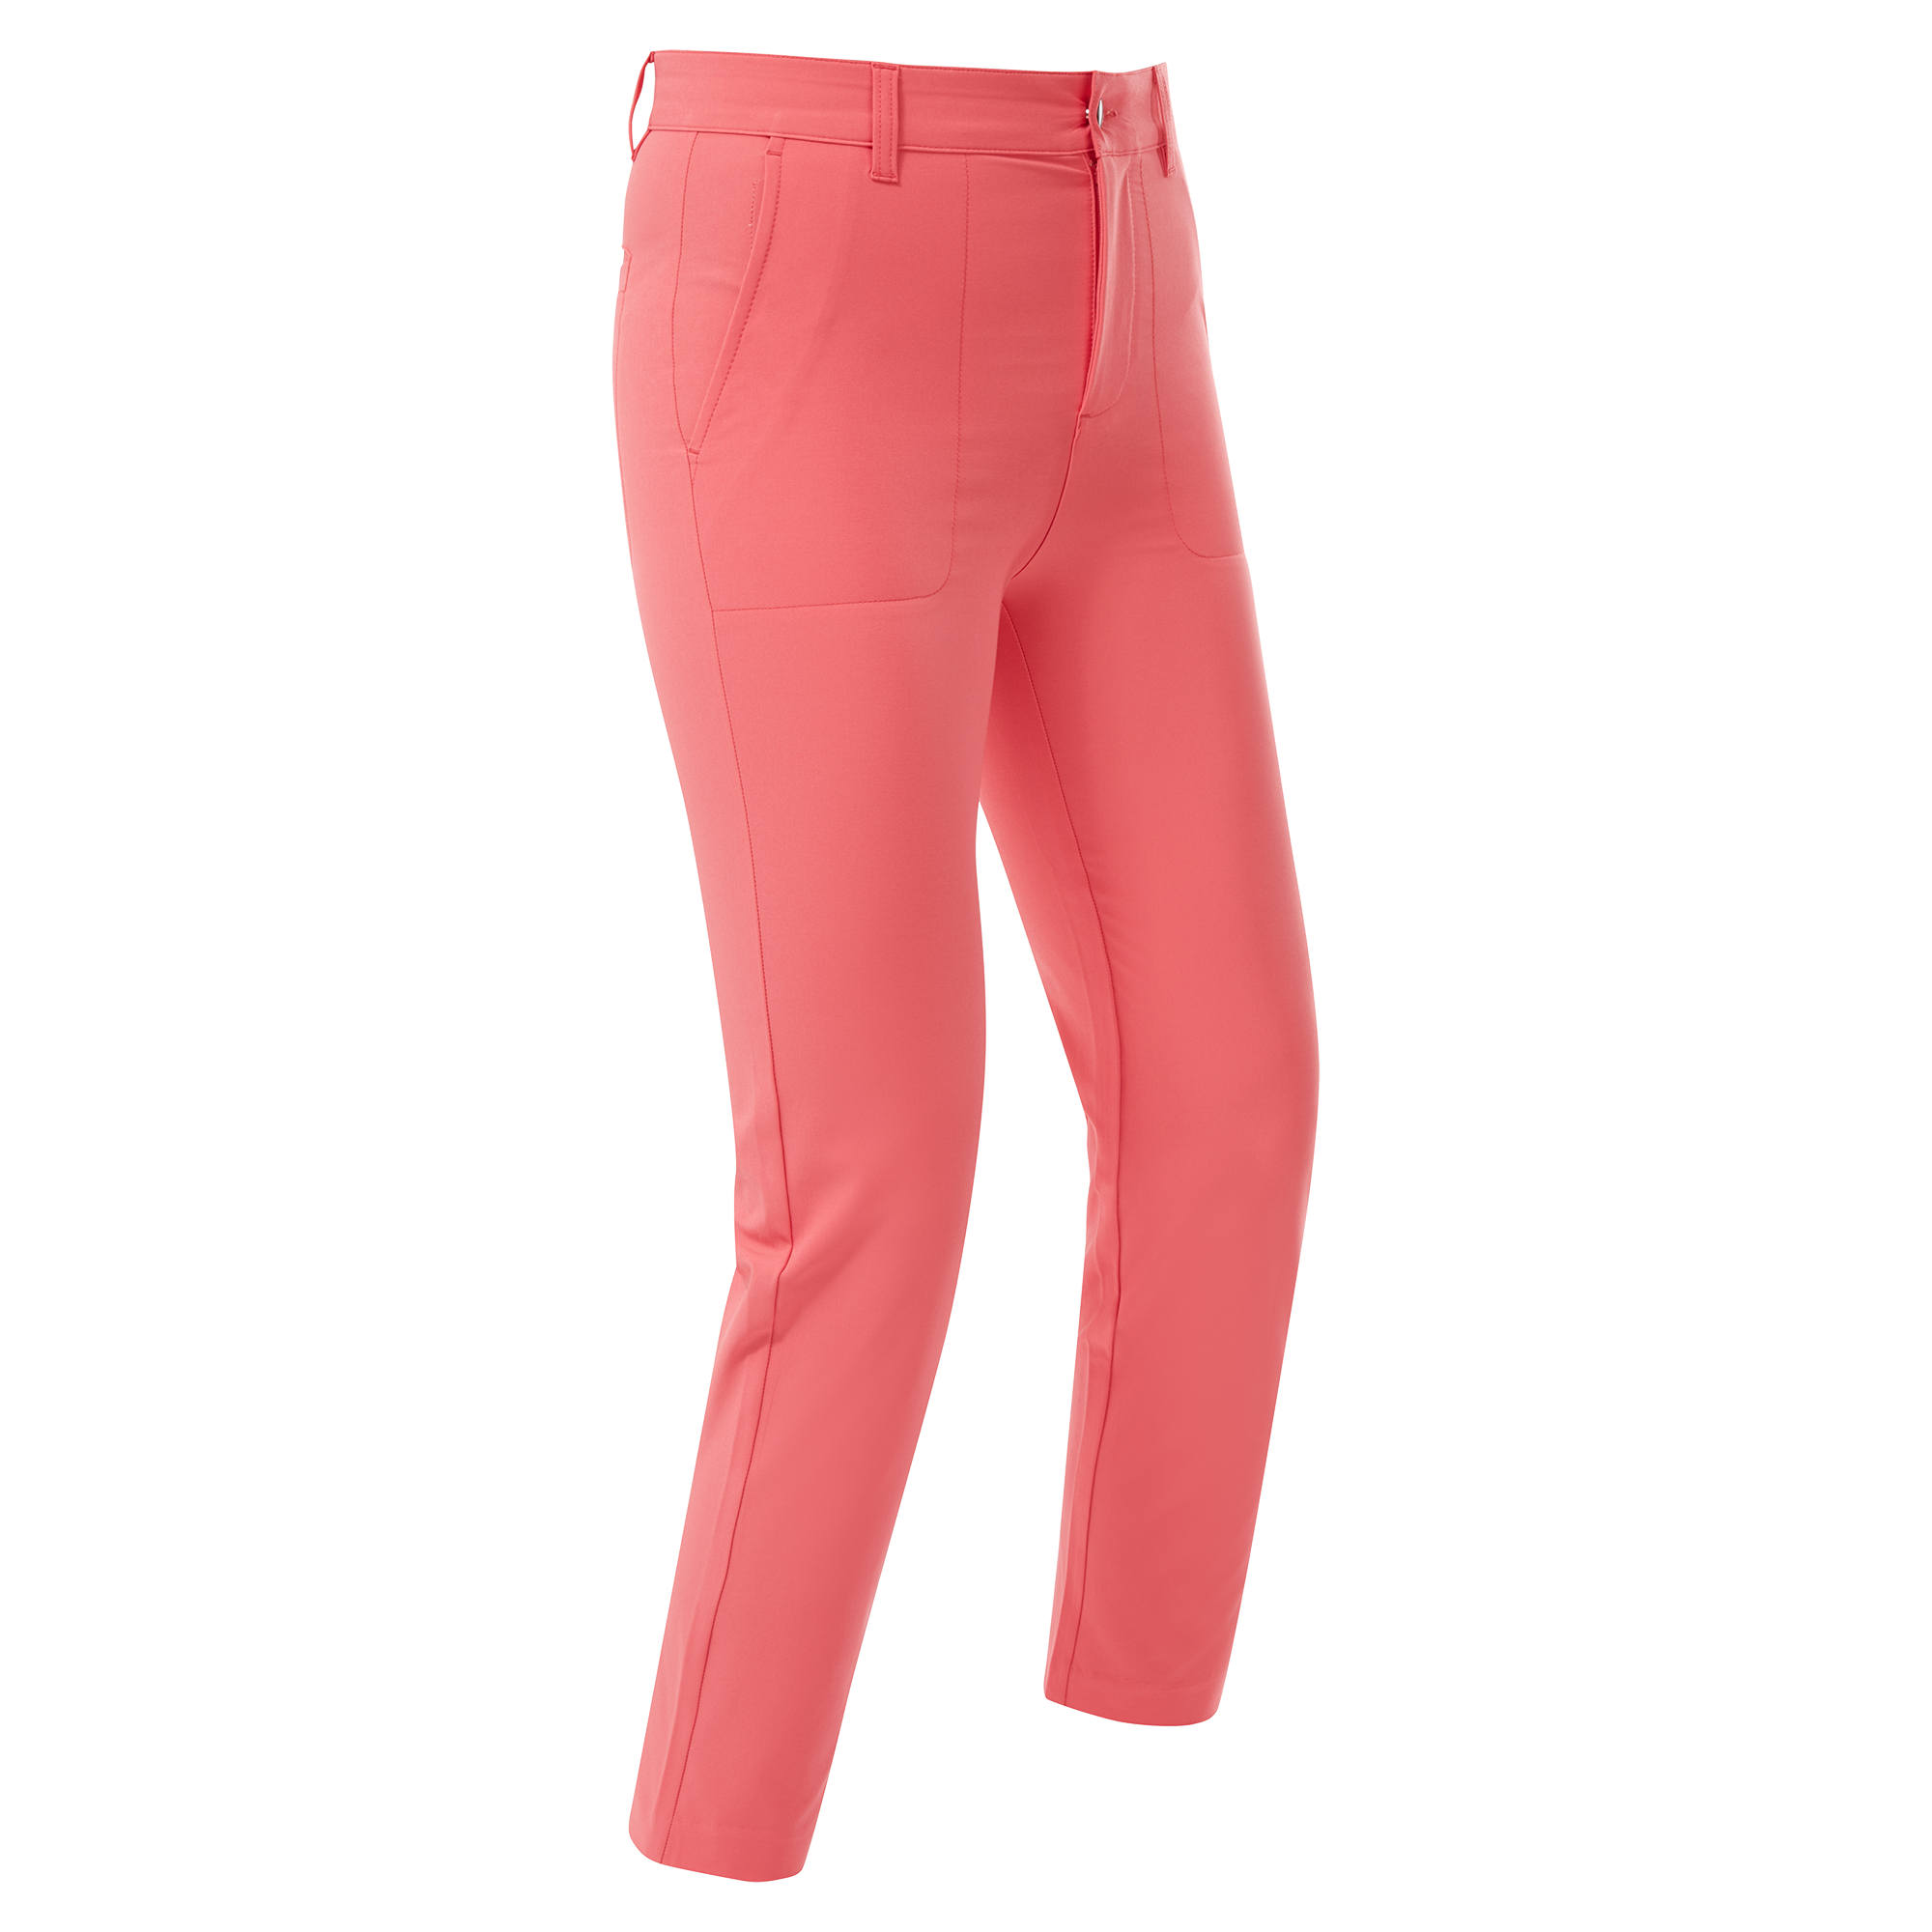 FootJoy Stretch Cropped dámské golfové kalhoty, korálové, vel. XS